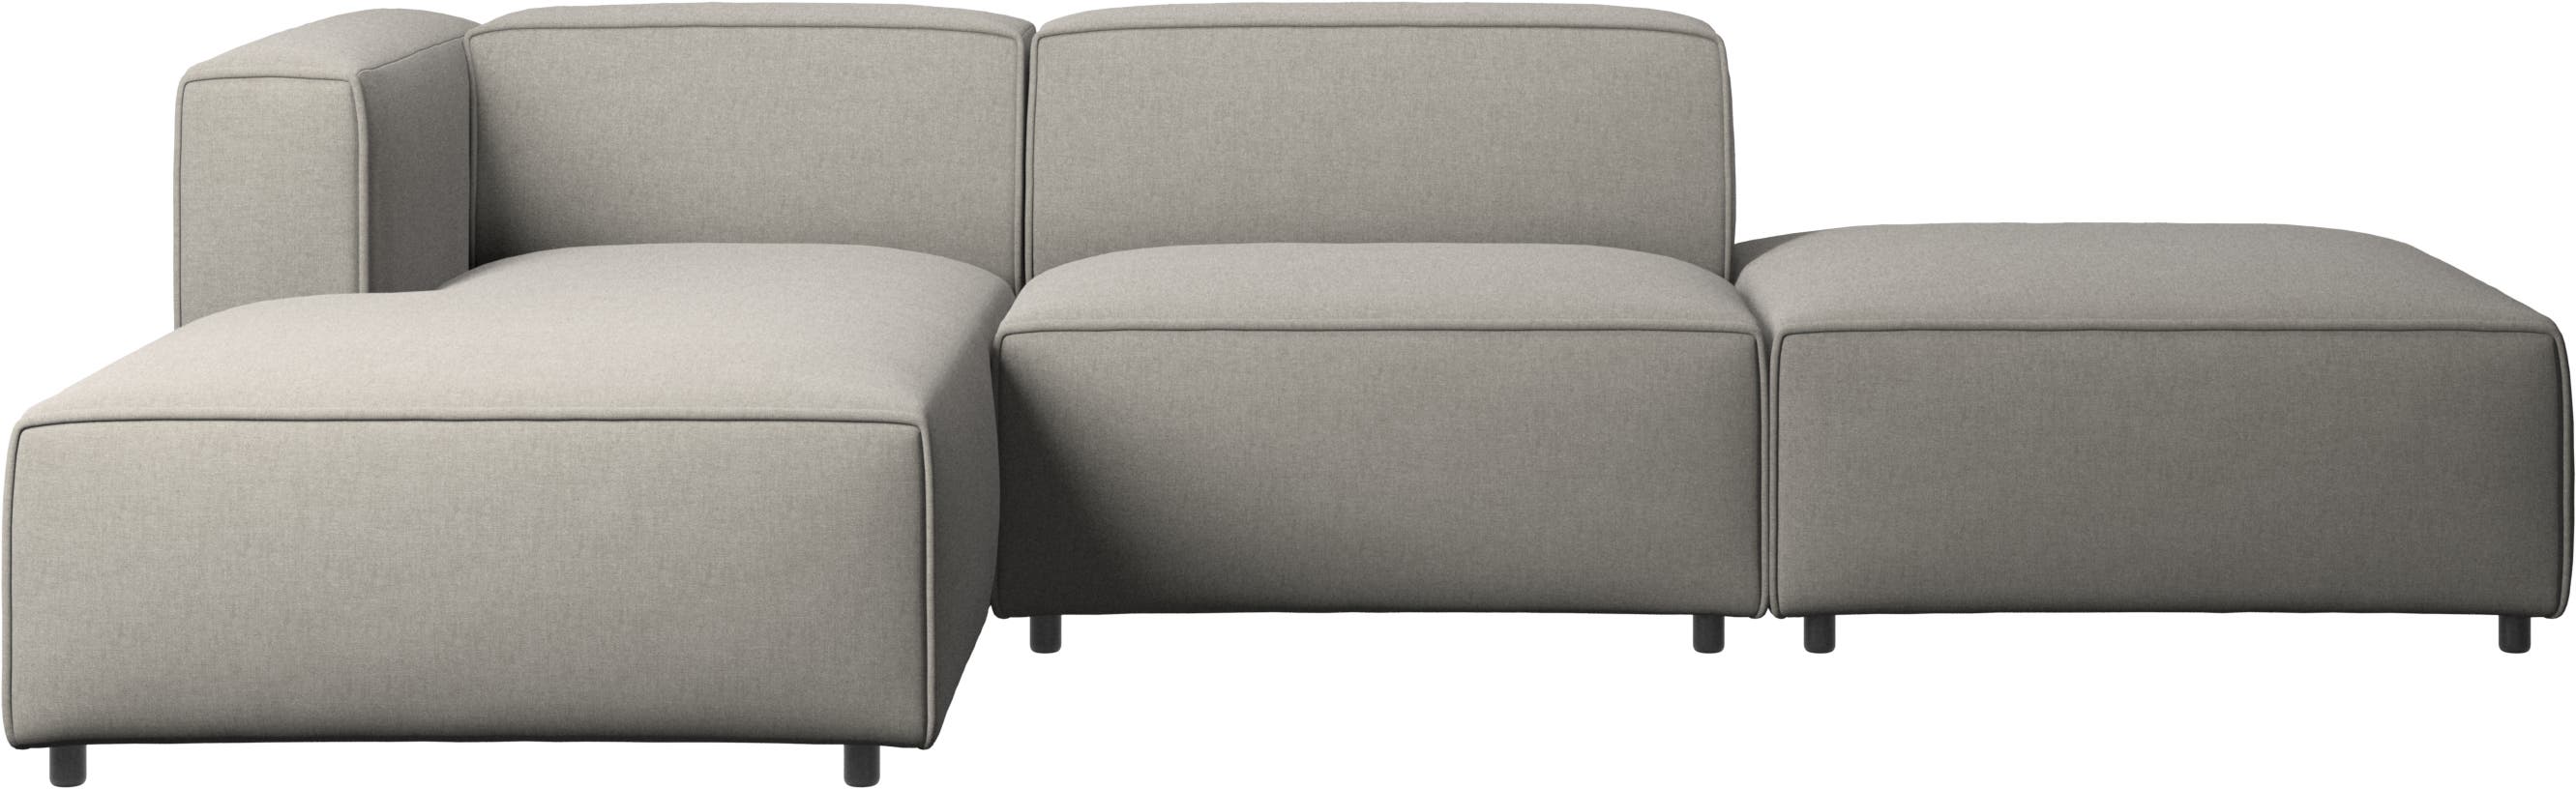 Carmo sofa med lounge- og hvilemodul